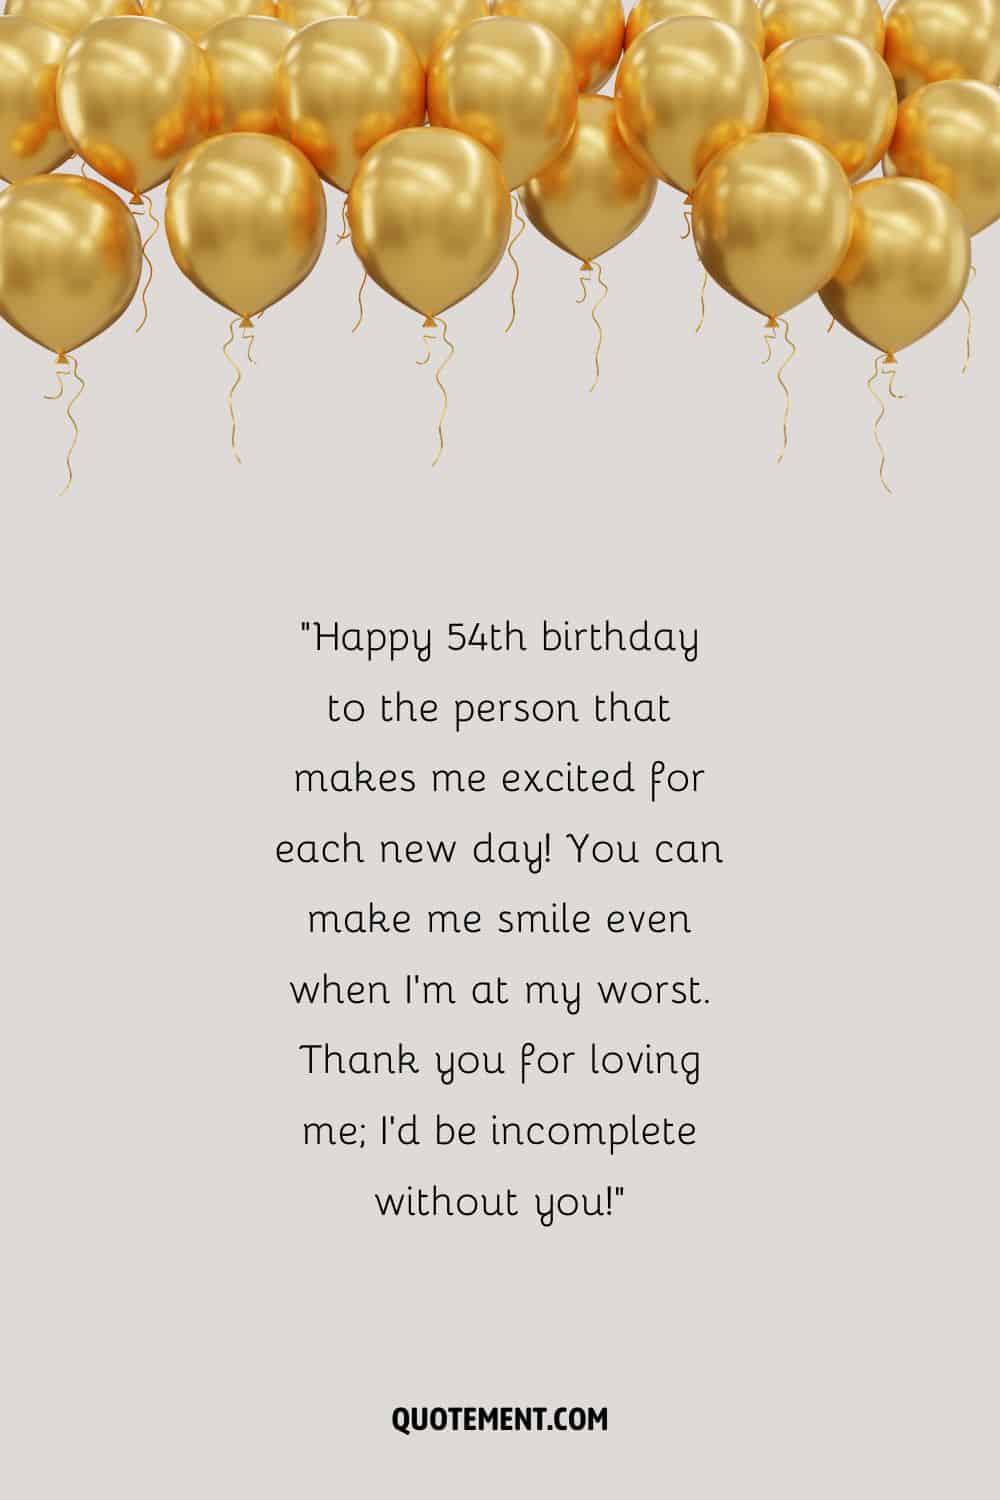 El mejor mensaje de feliz 54 cumpleaños y un montón de globos dorados por encima.